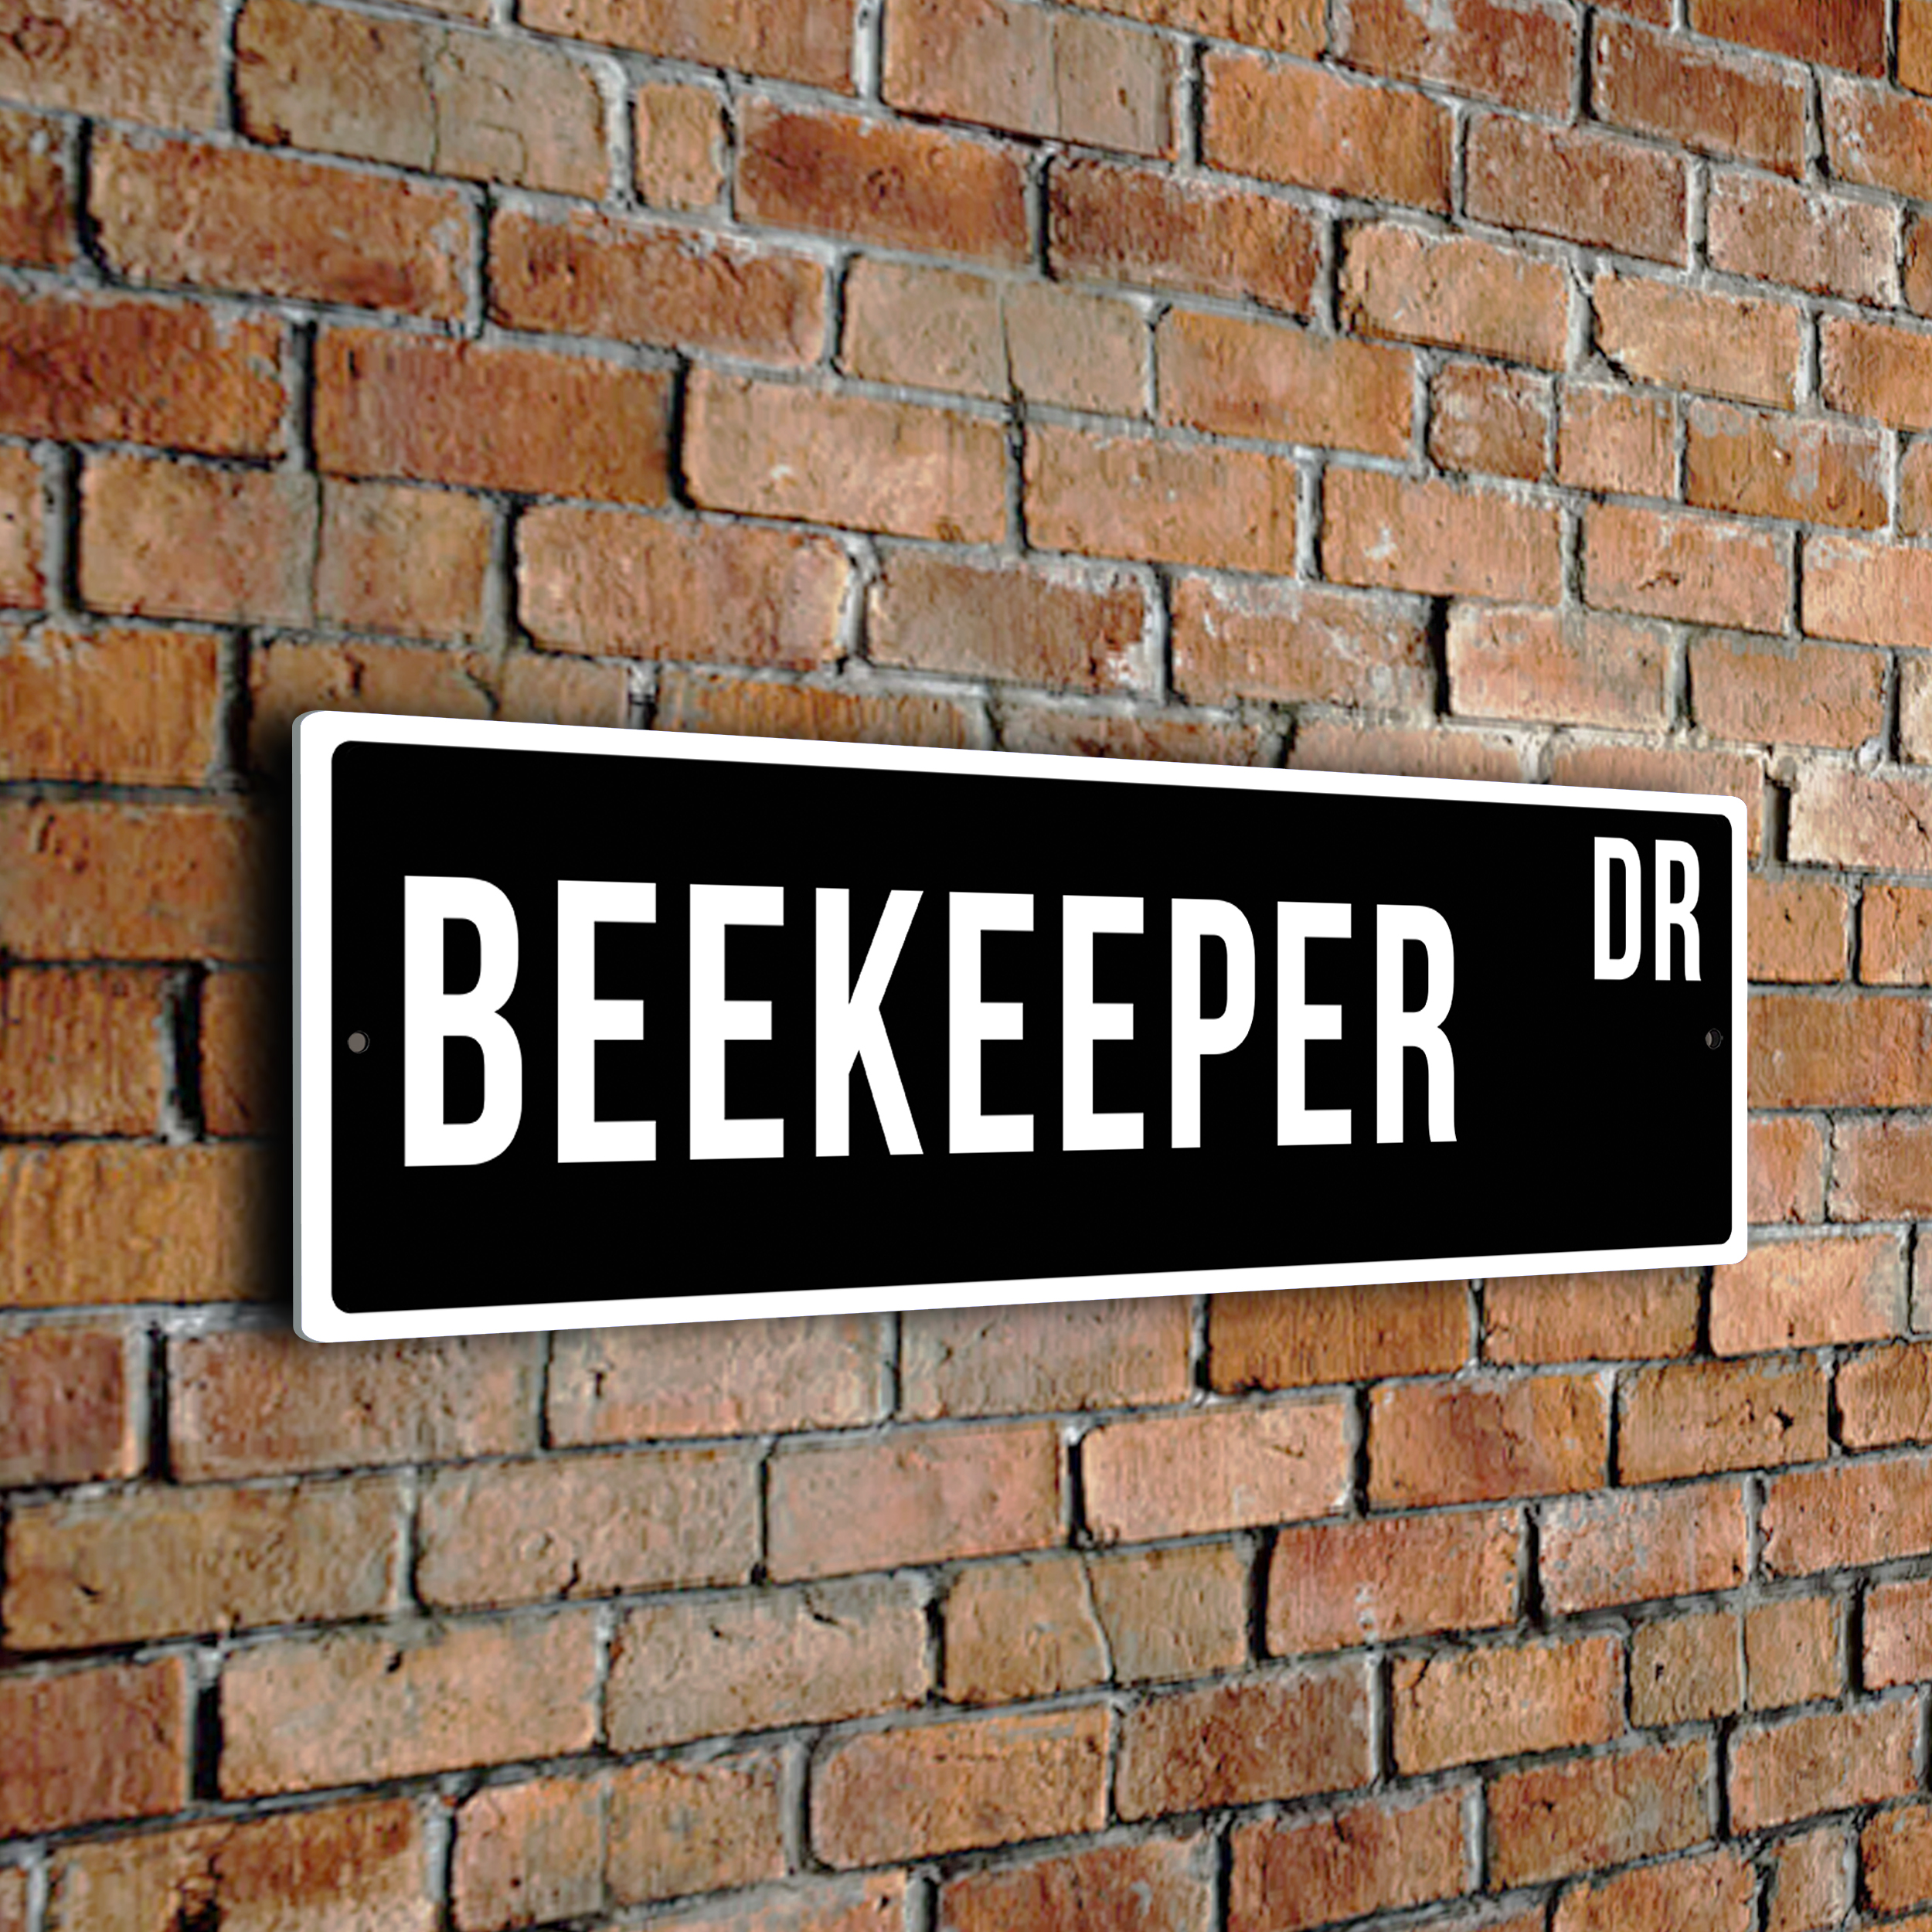 Beekeeper street sign